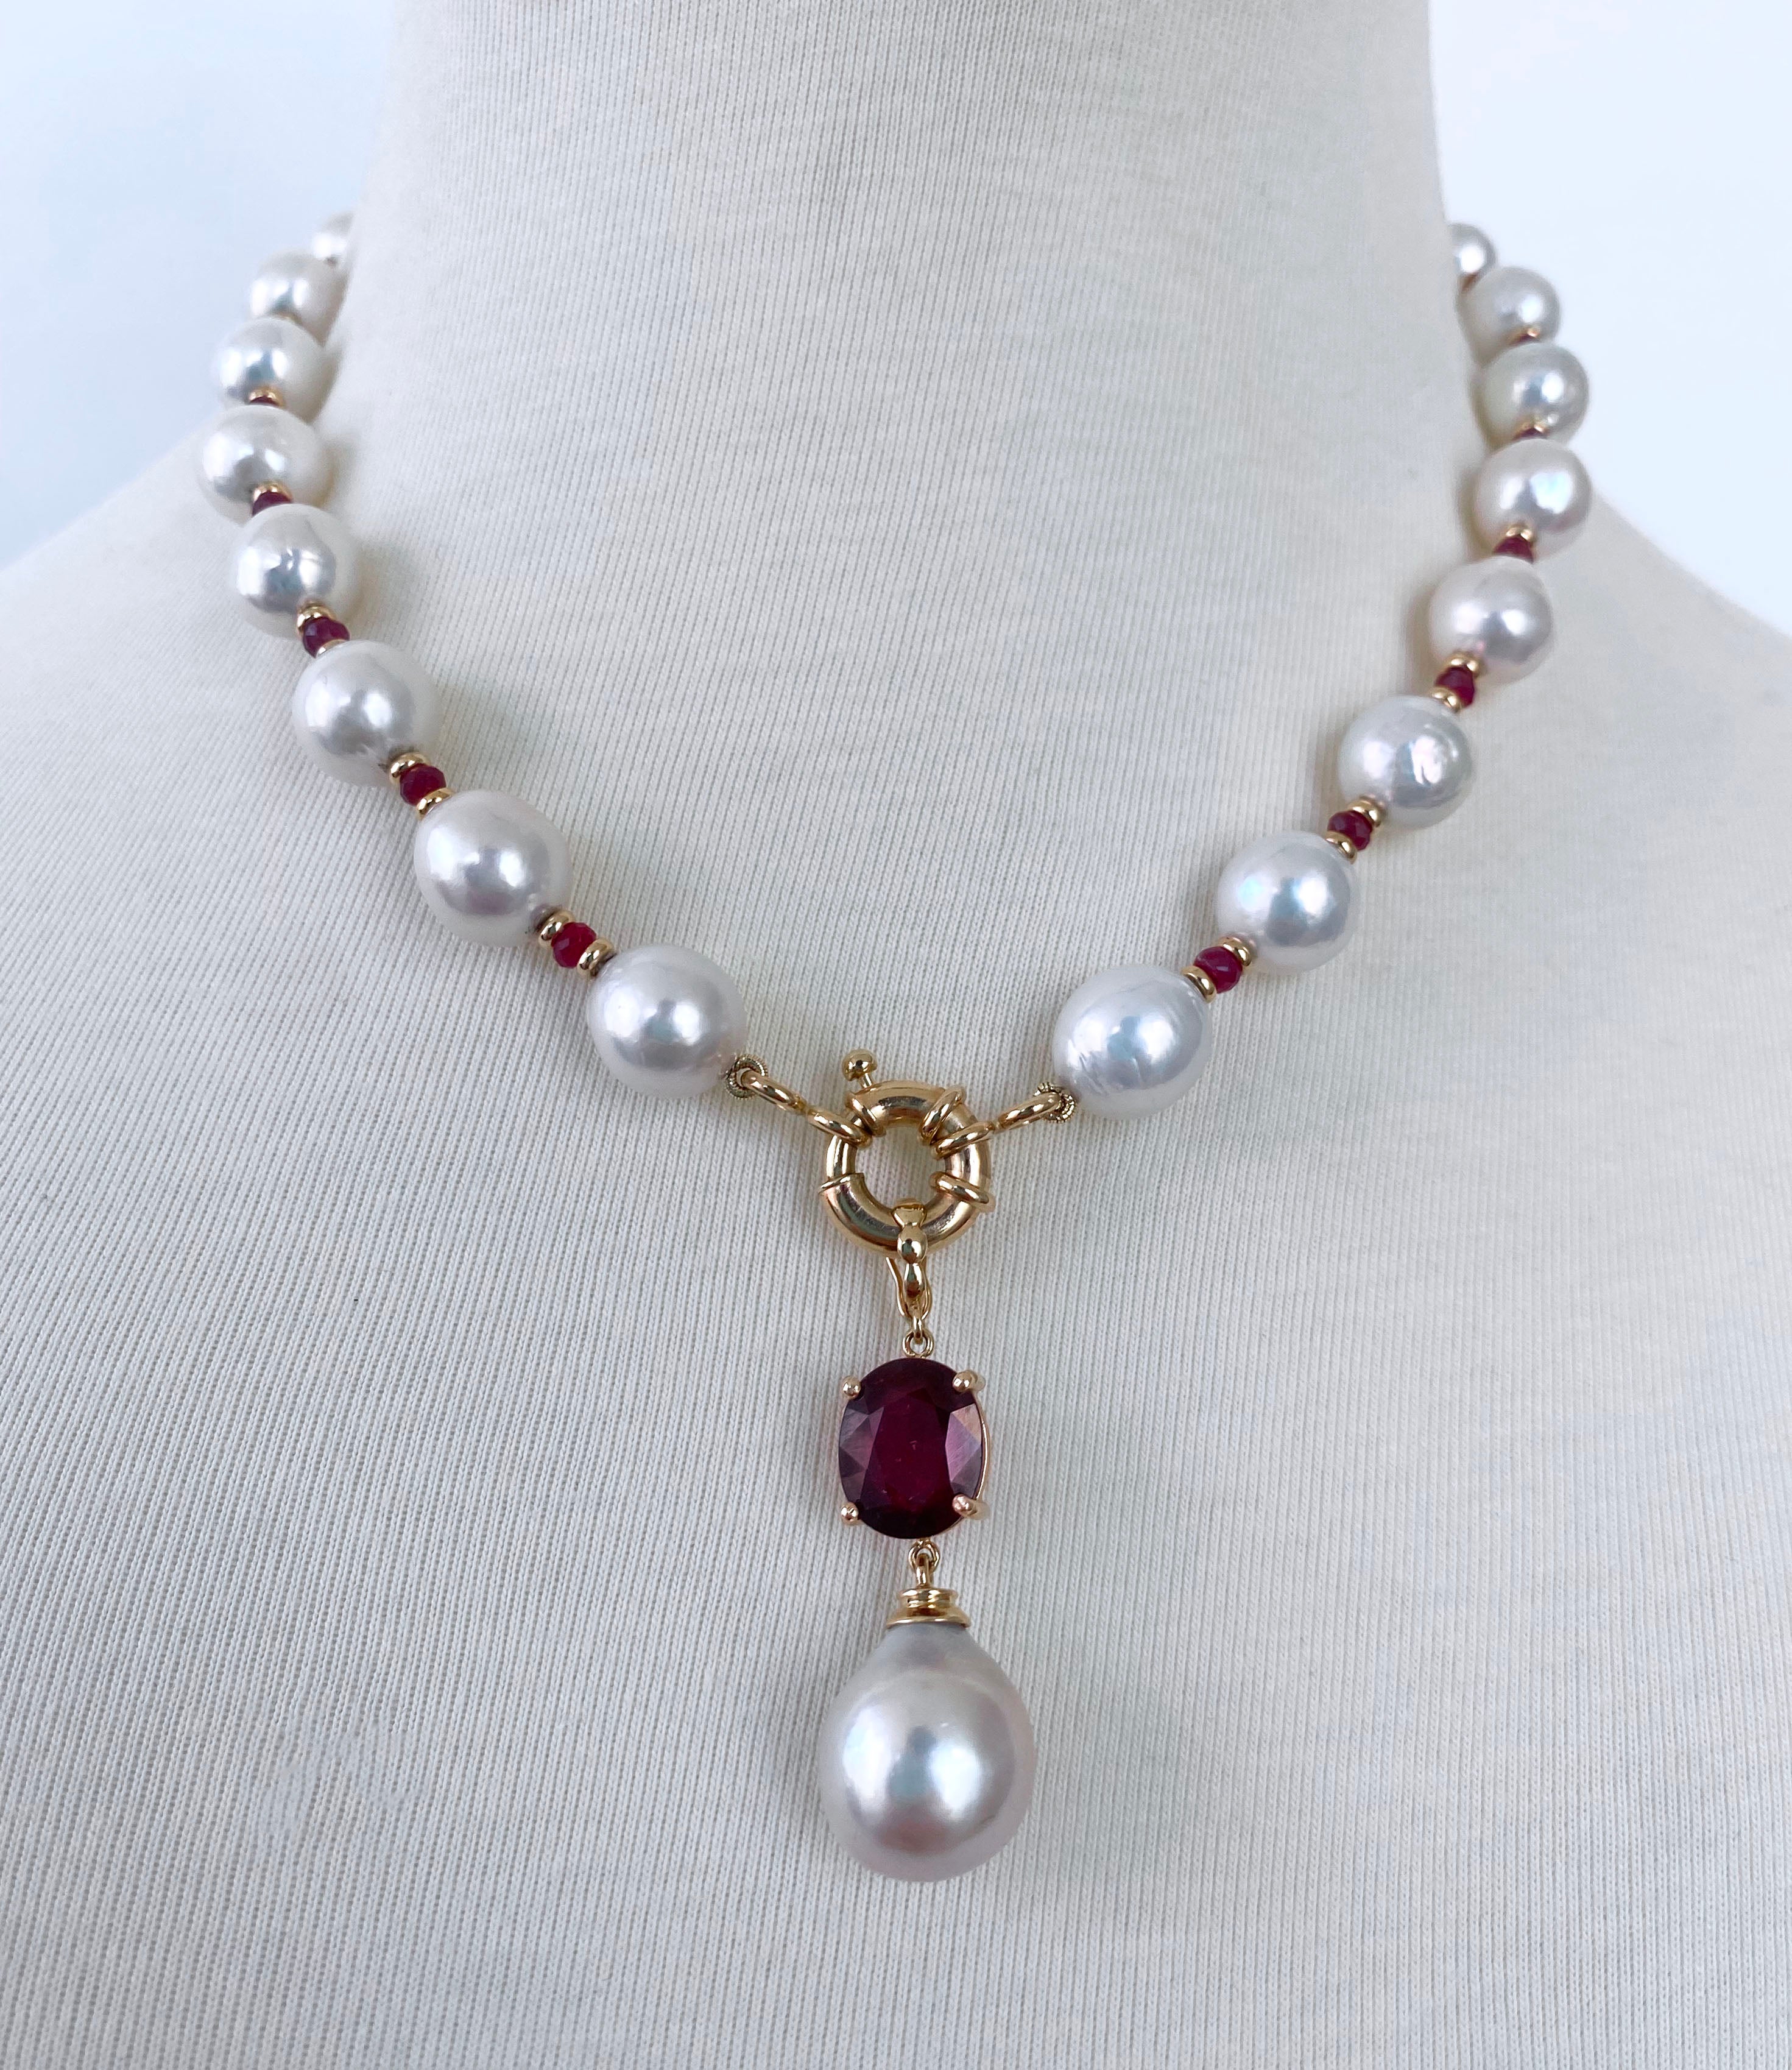 Magnifique collier de rubis et de perles de Marina J.

Cette pièce est composée de perles baroques, de rubis et d'or jaune 14k. Les perles baroques présentent une magnifique iridescence qui leur confère un éclat multicolore. Des rubis facettés et